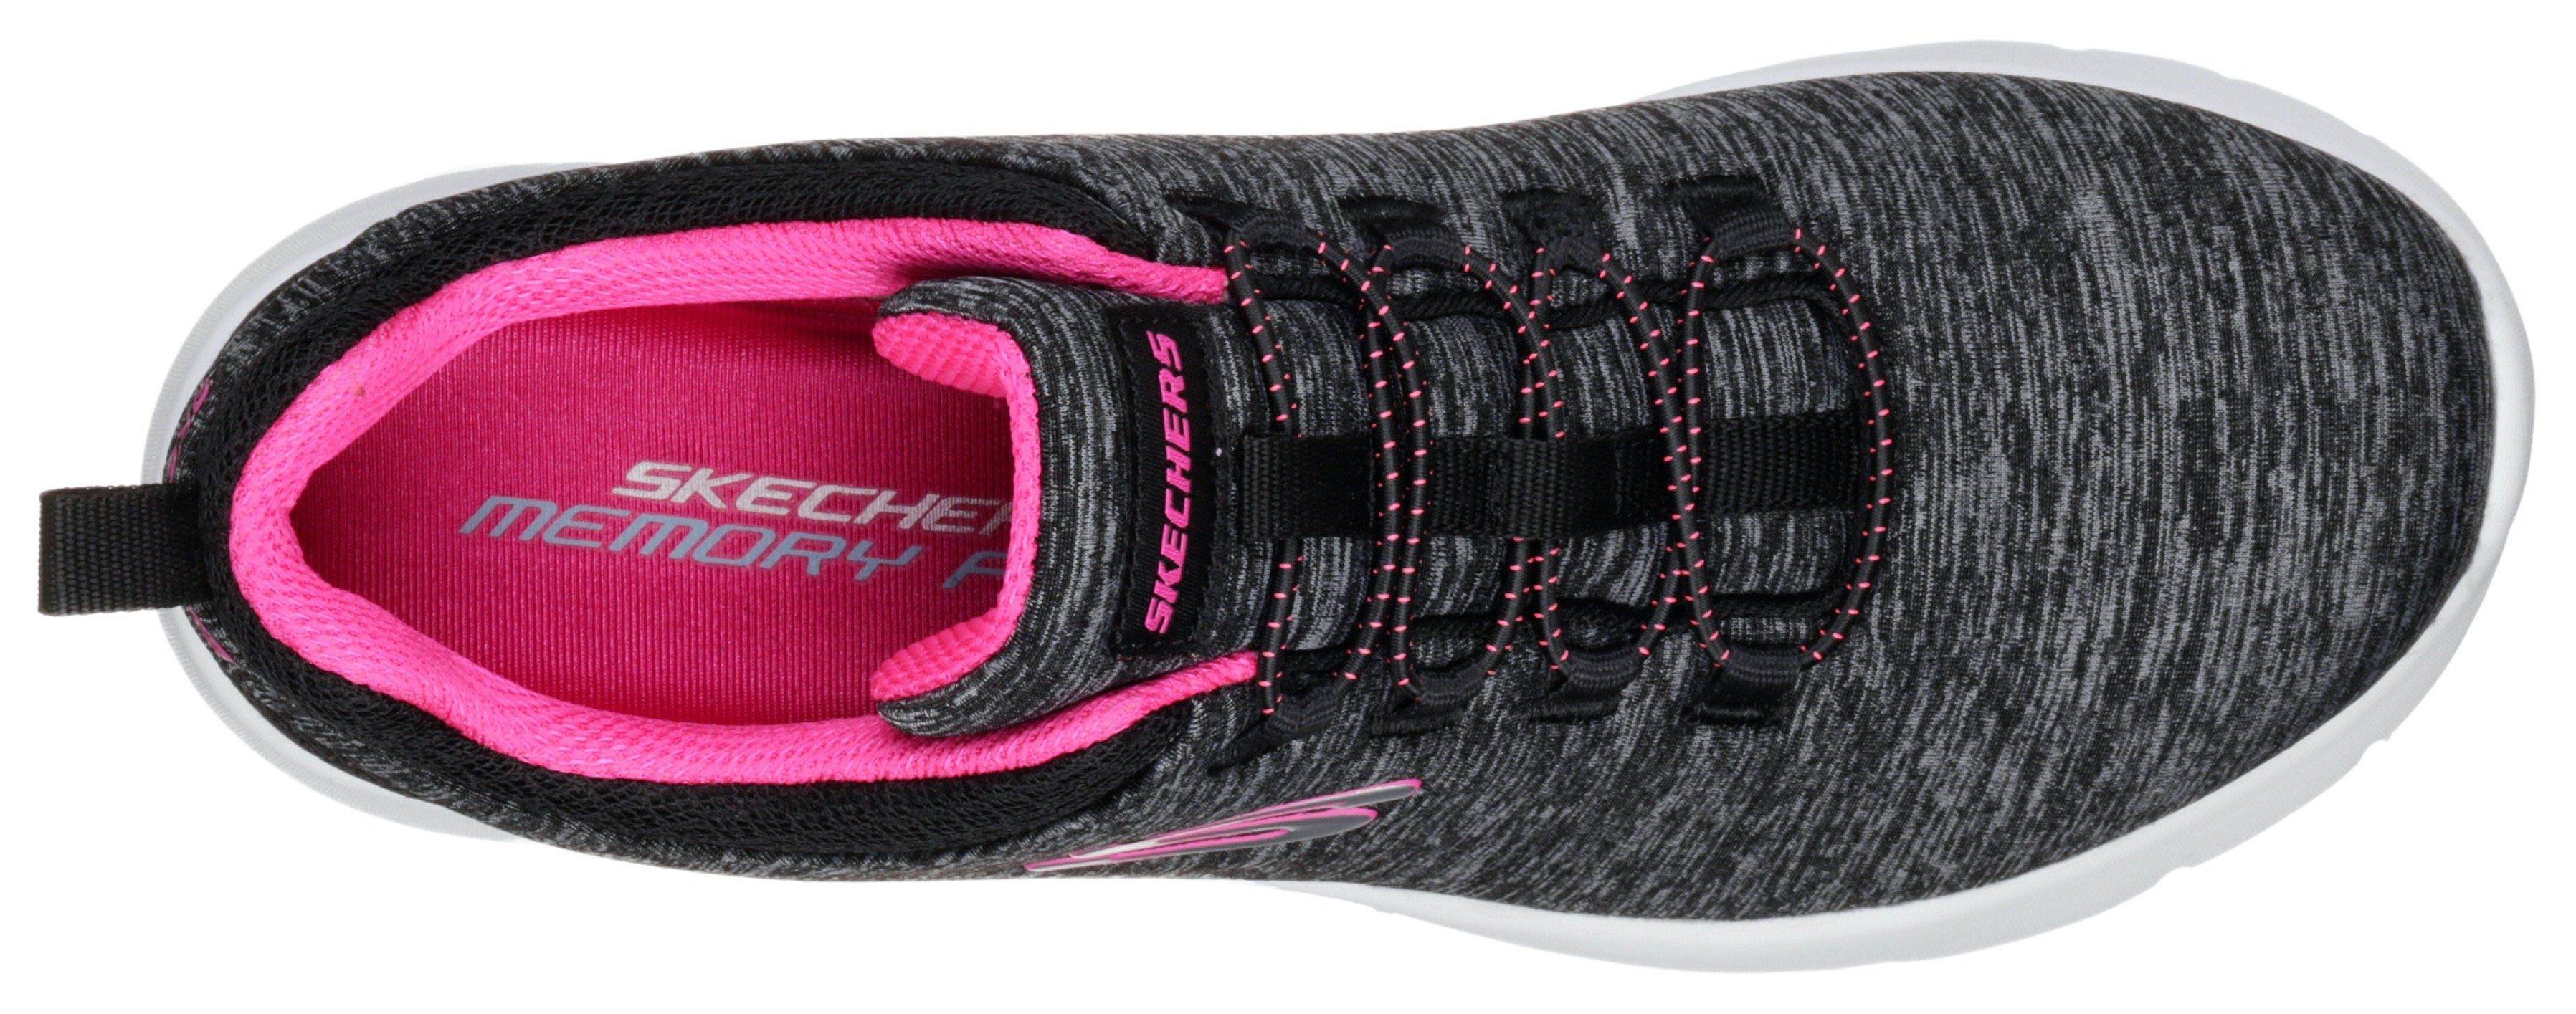 Skechers DYNAMIGHT 2.0-IN A FLASH geeignet schwarz-pink für Slip-On Sneaker Maschinenwäsche